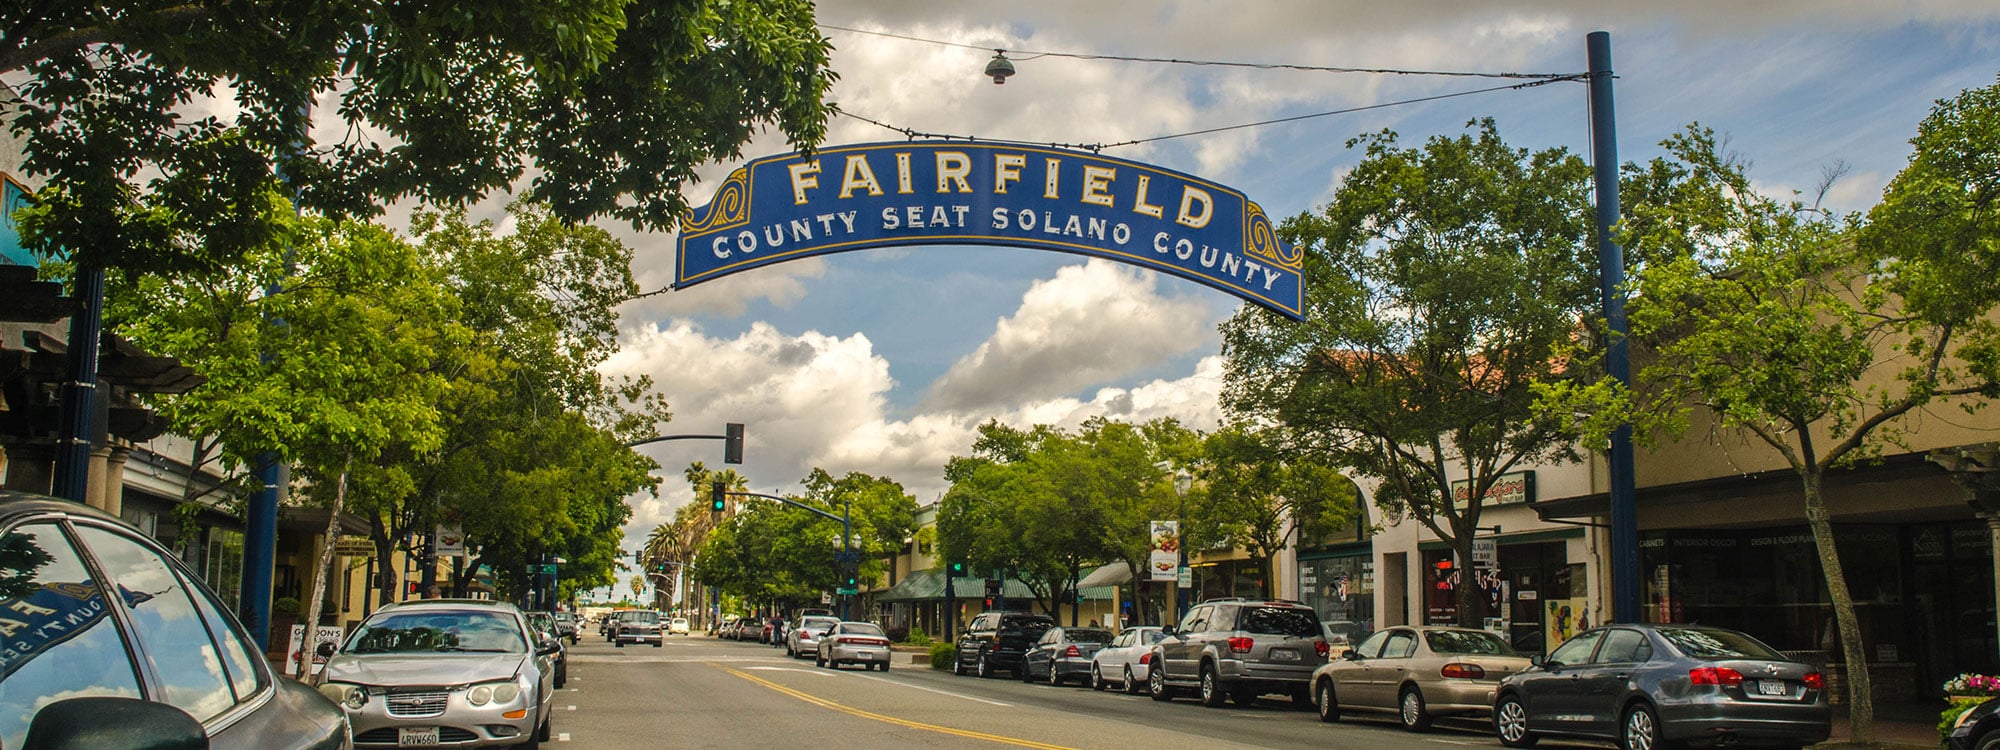 Fairfield CA Solano County